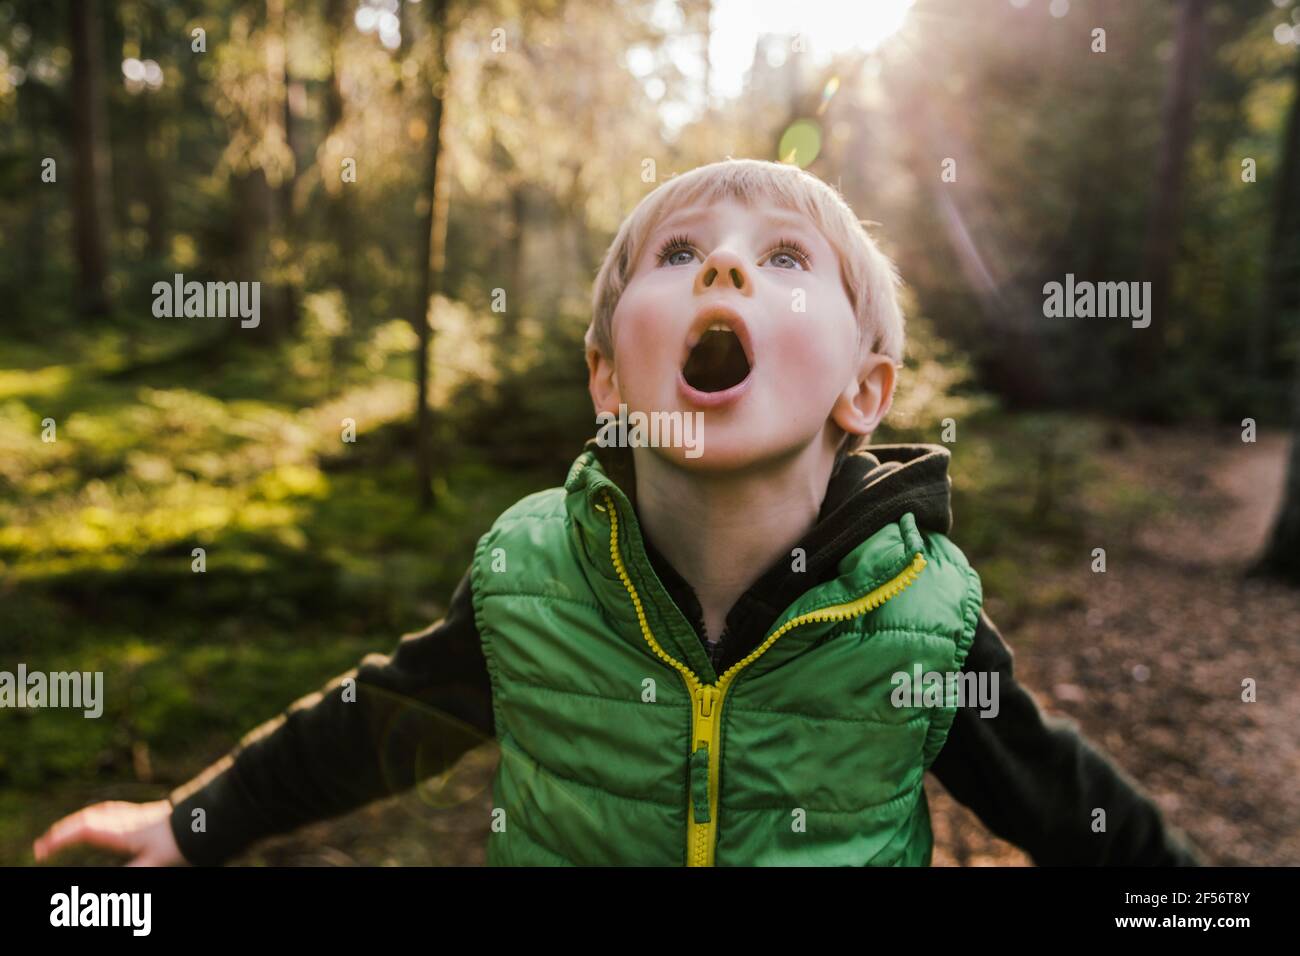 Junge mit offenem Mund, der im Wald steht Stockfoto